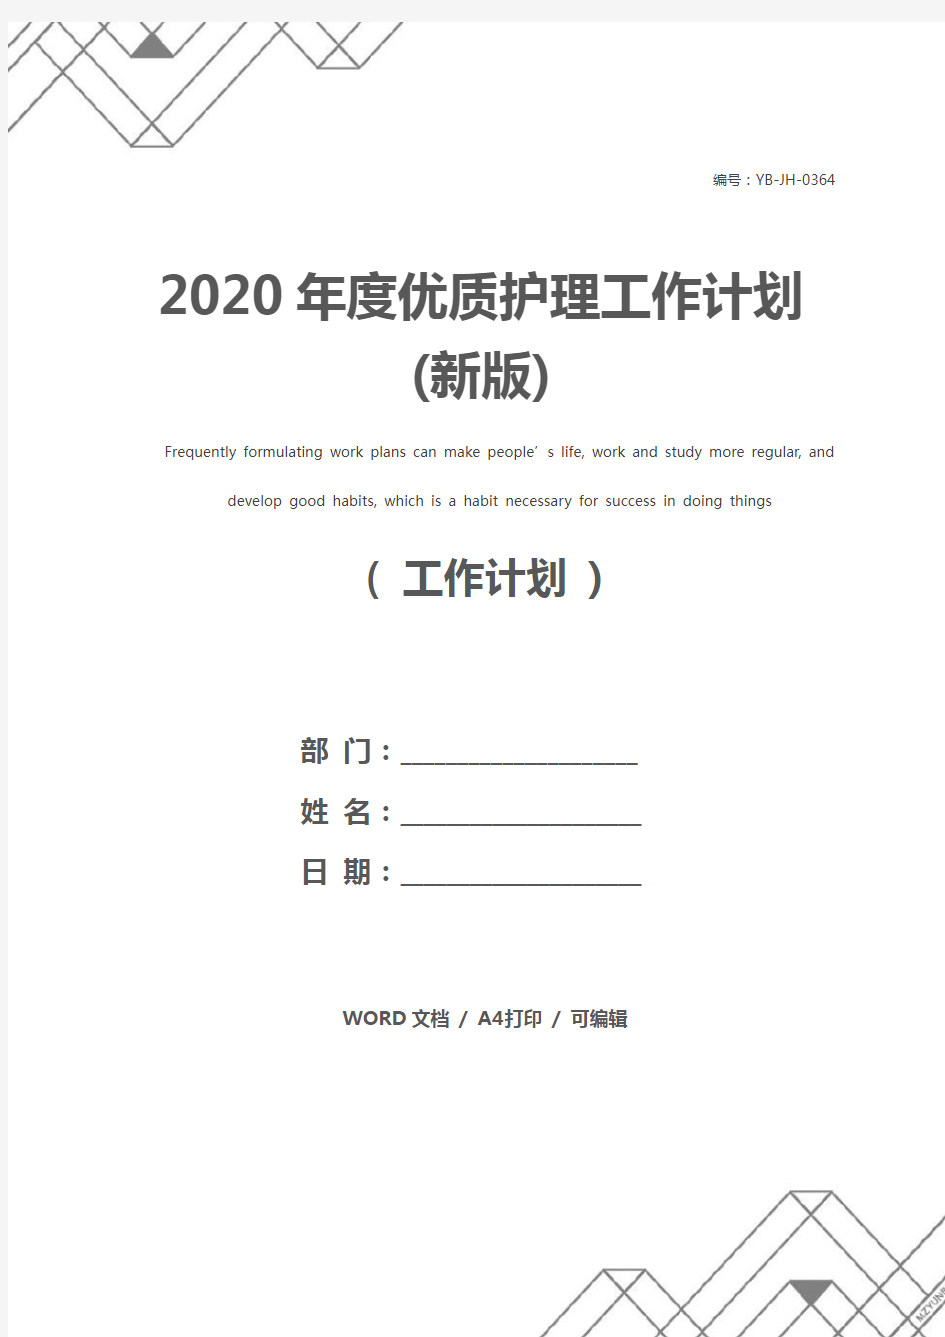 2020年度优质护理工作计划(新版)